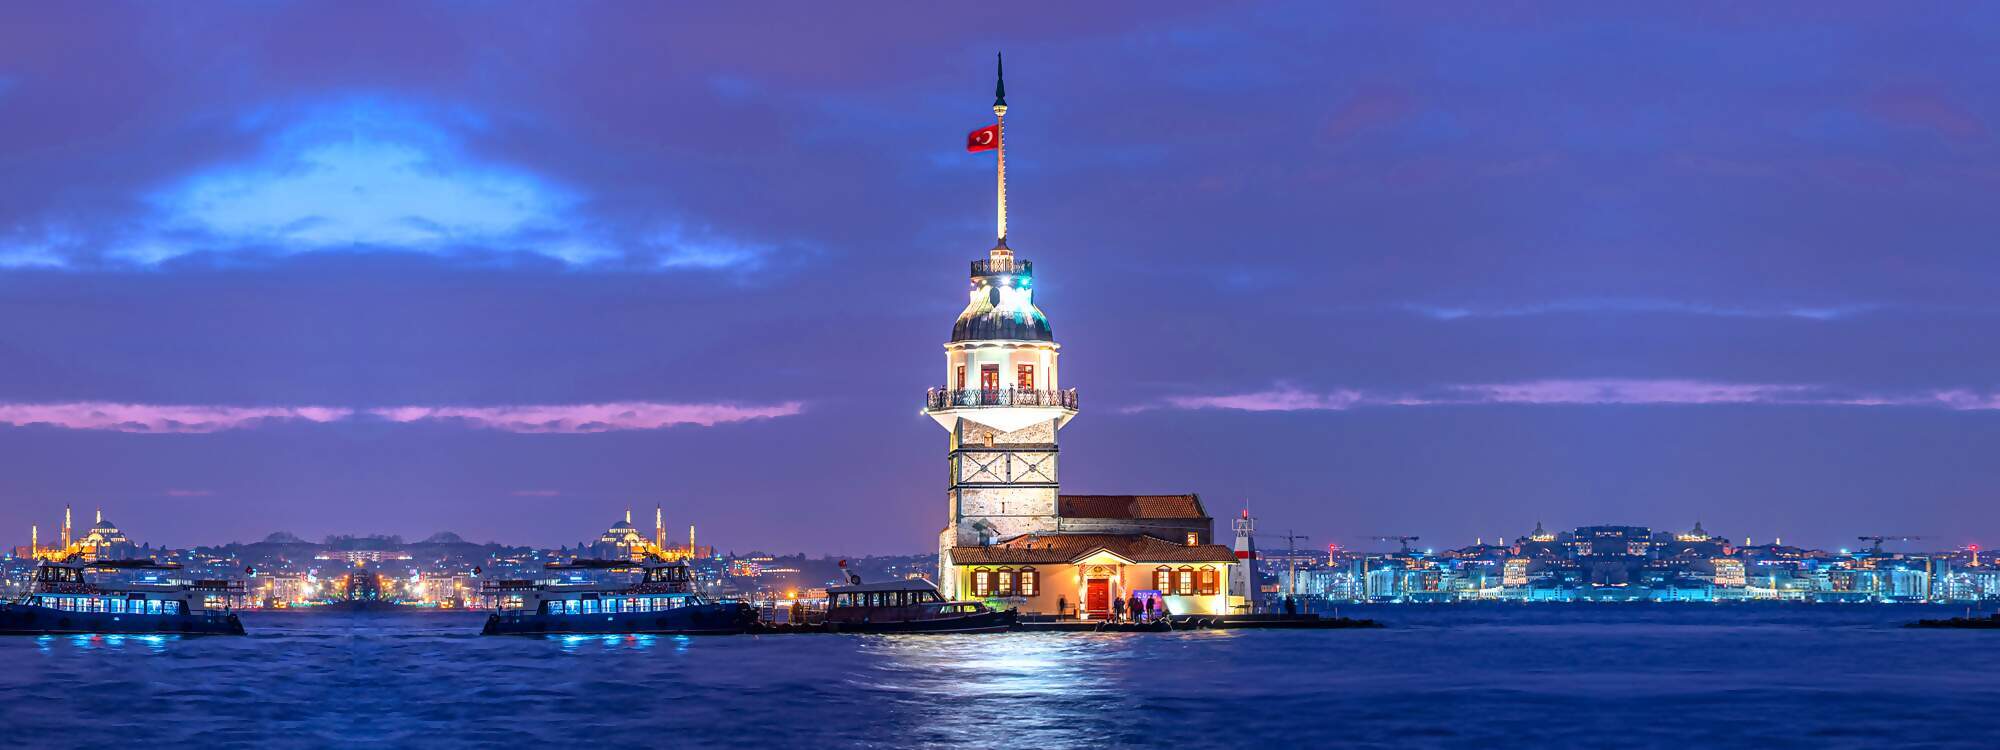 Der Turm des Maedchens oder auf tuerkisch Kiz Kulesi in Istanbul - Tuerkei